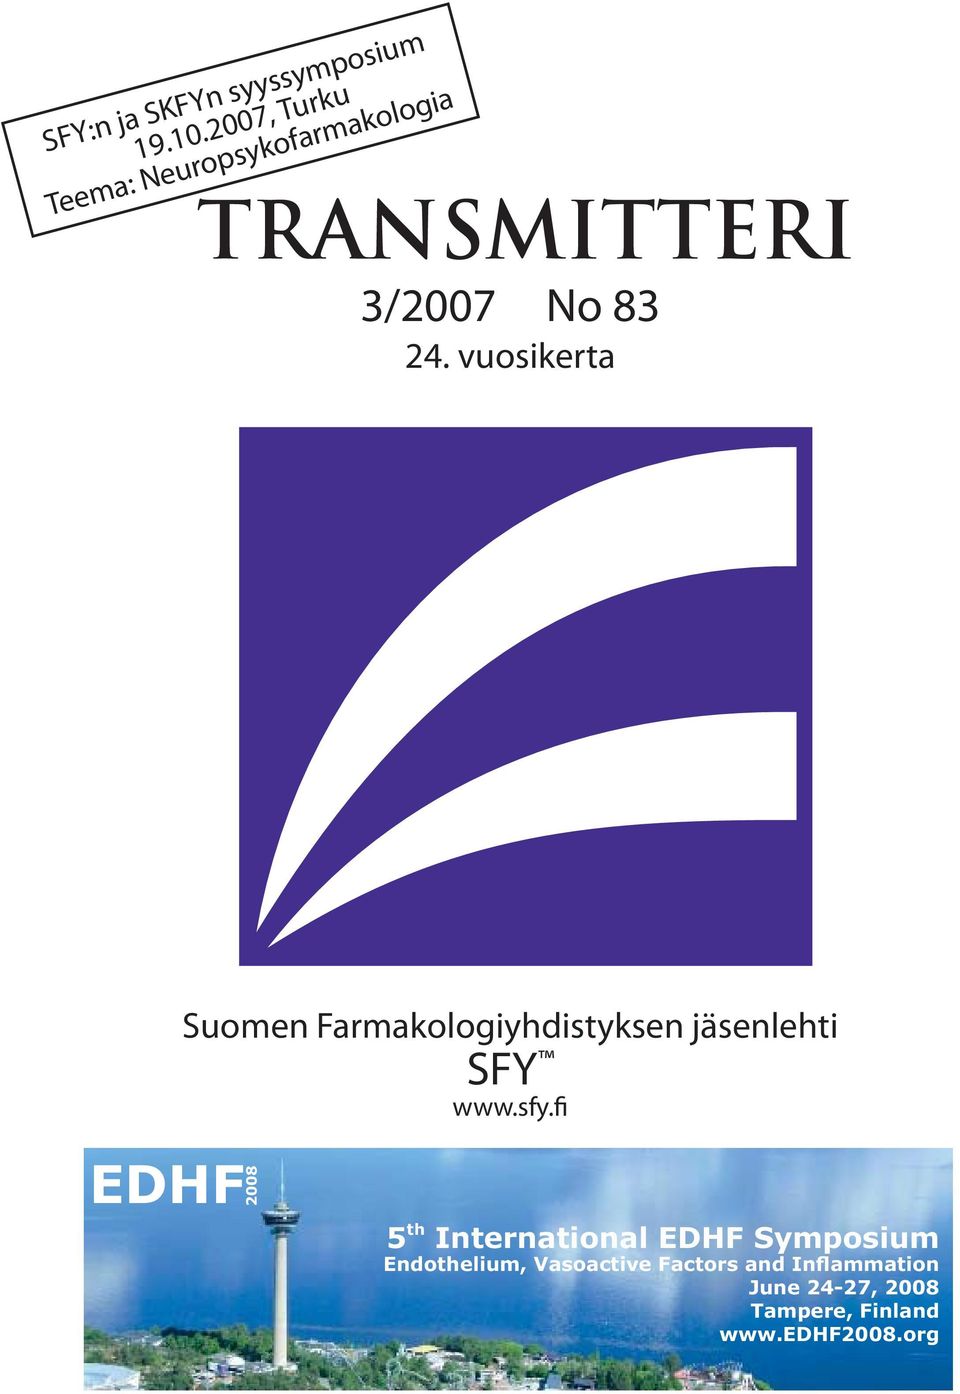 vuosikerta 1 Suomen Farmakologiyhdistyksen jäsenlehti SFY www.sfy.